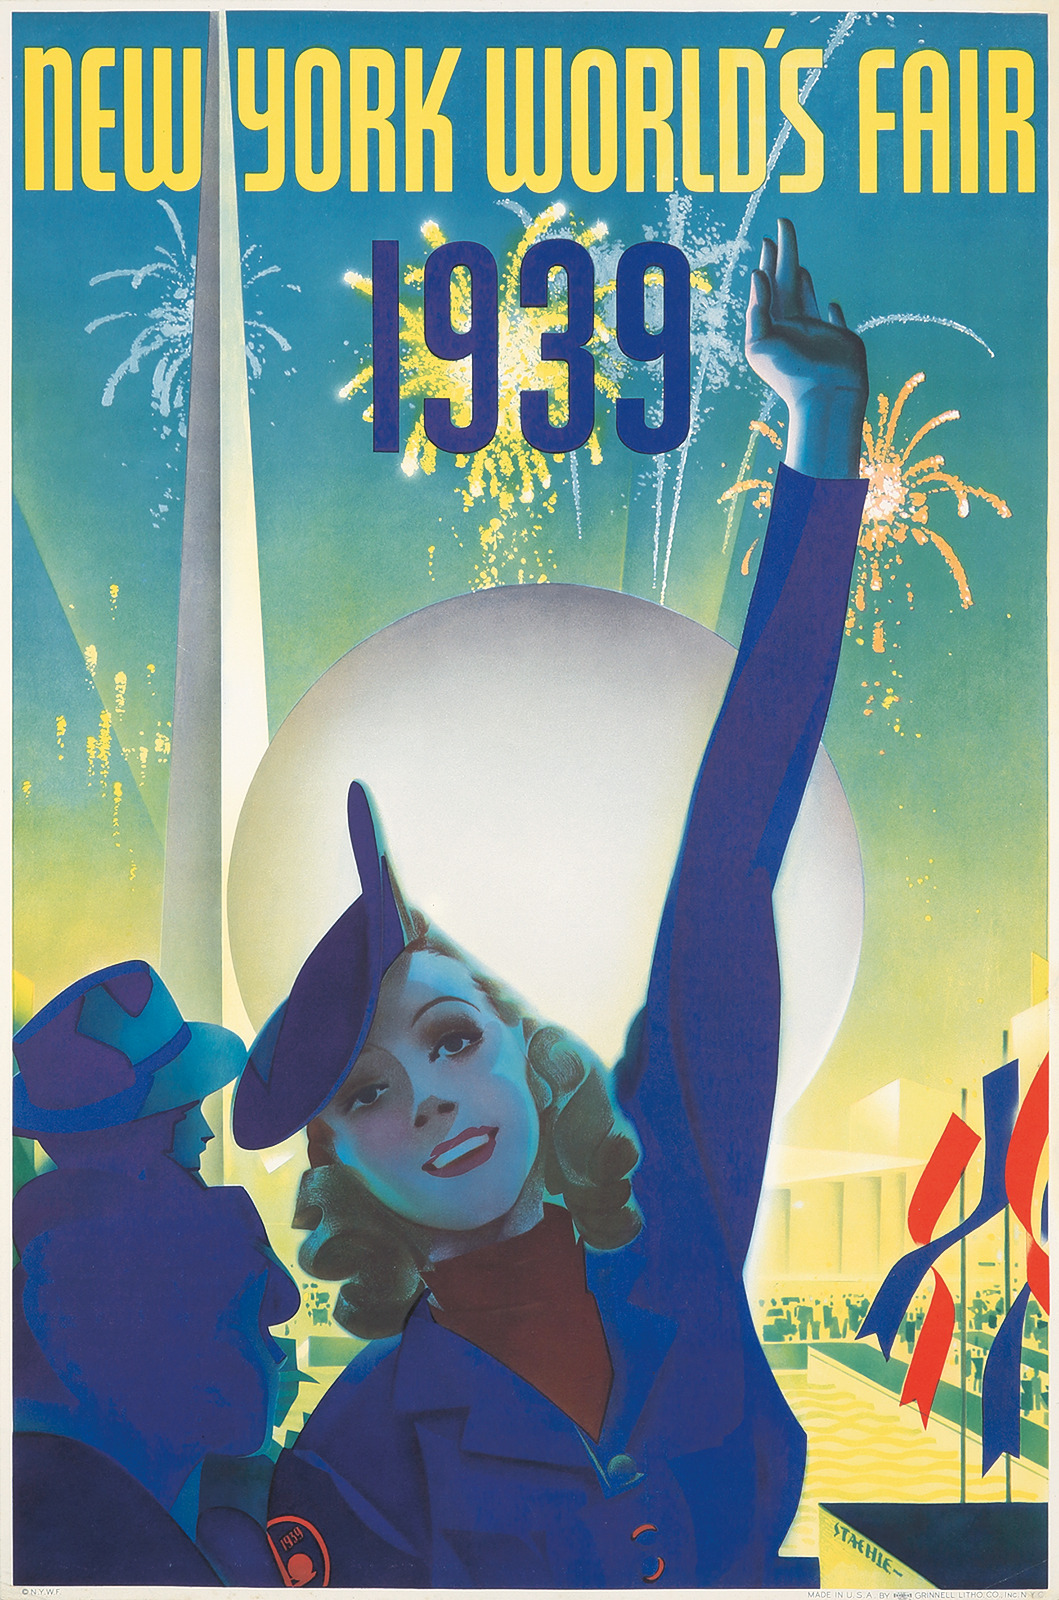 1939 New York World's Fair poster - art by Albert Staehle